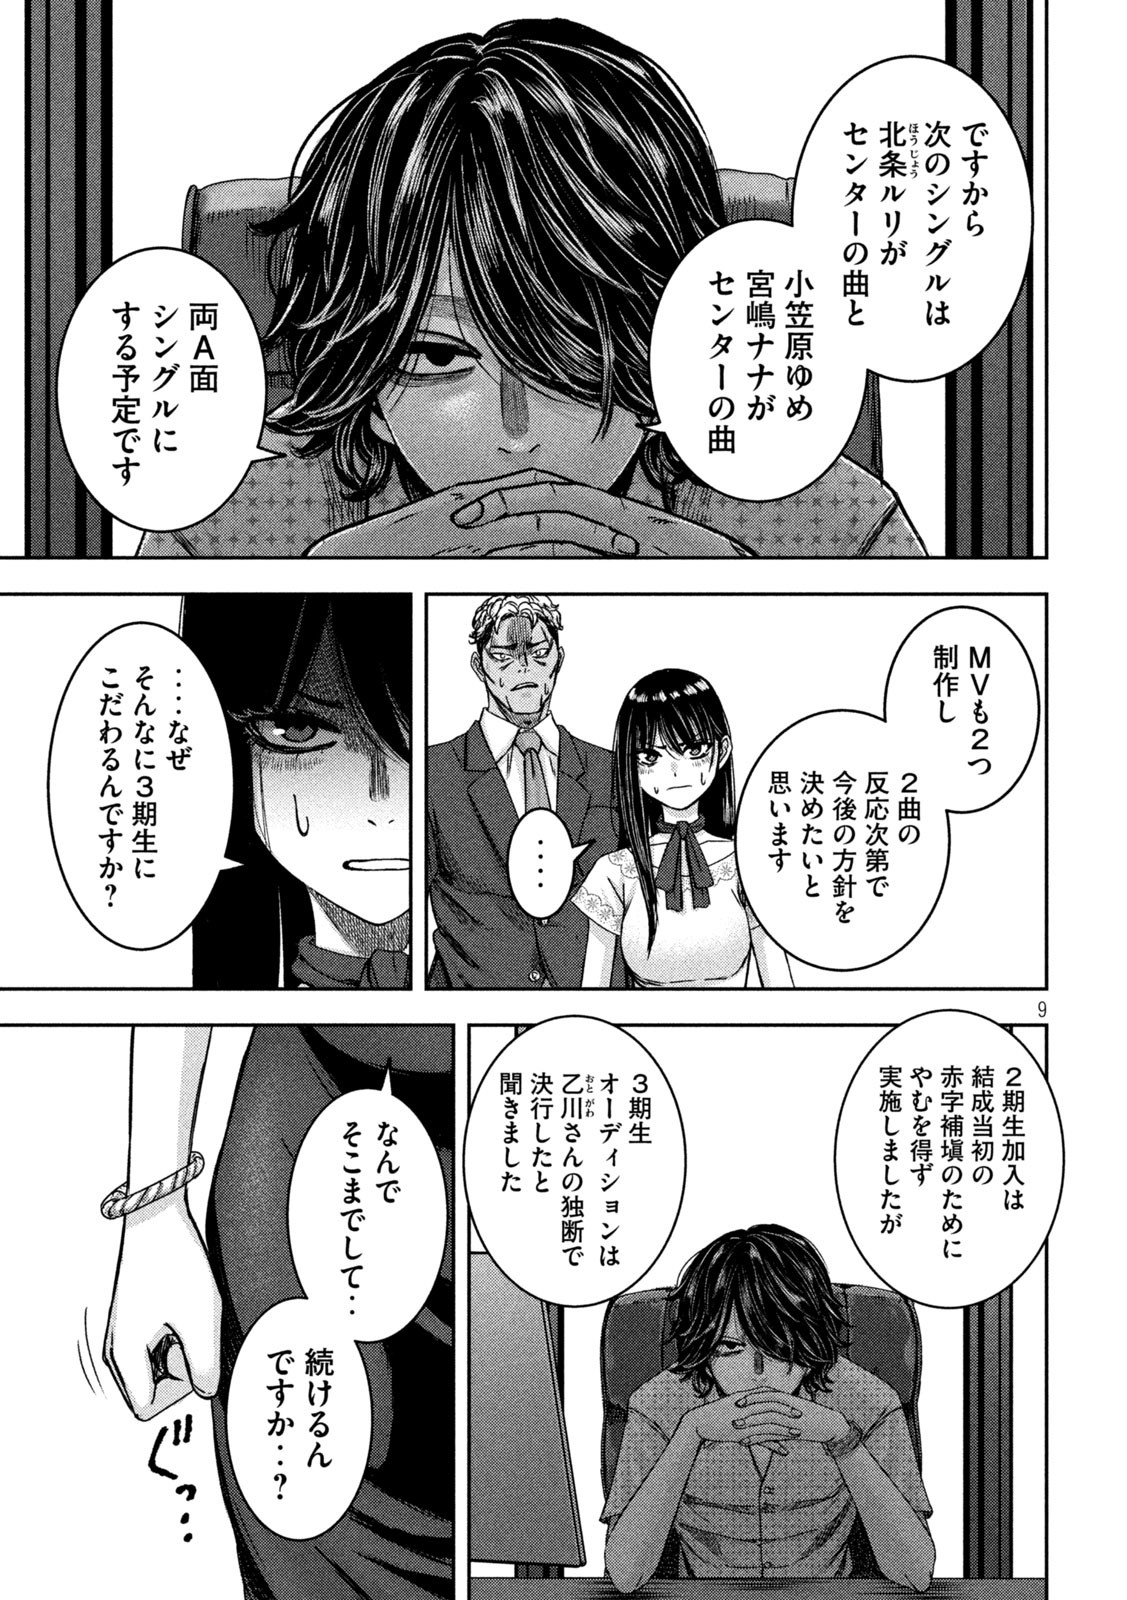 Watashi no Arika - Chapter 37 - Page 9